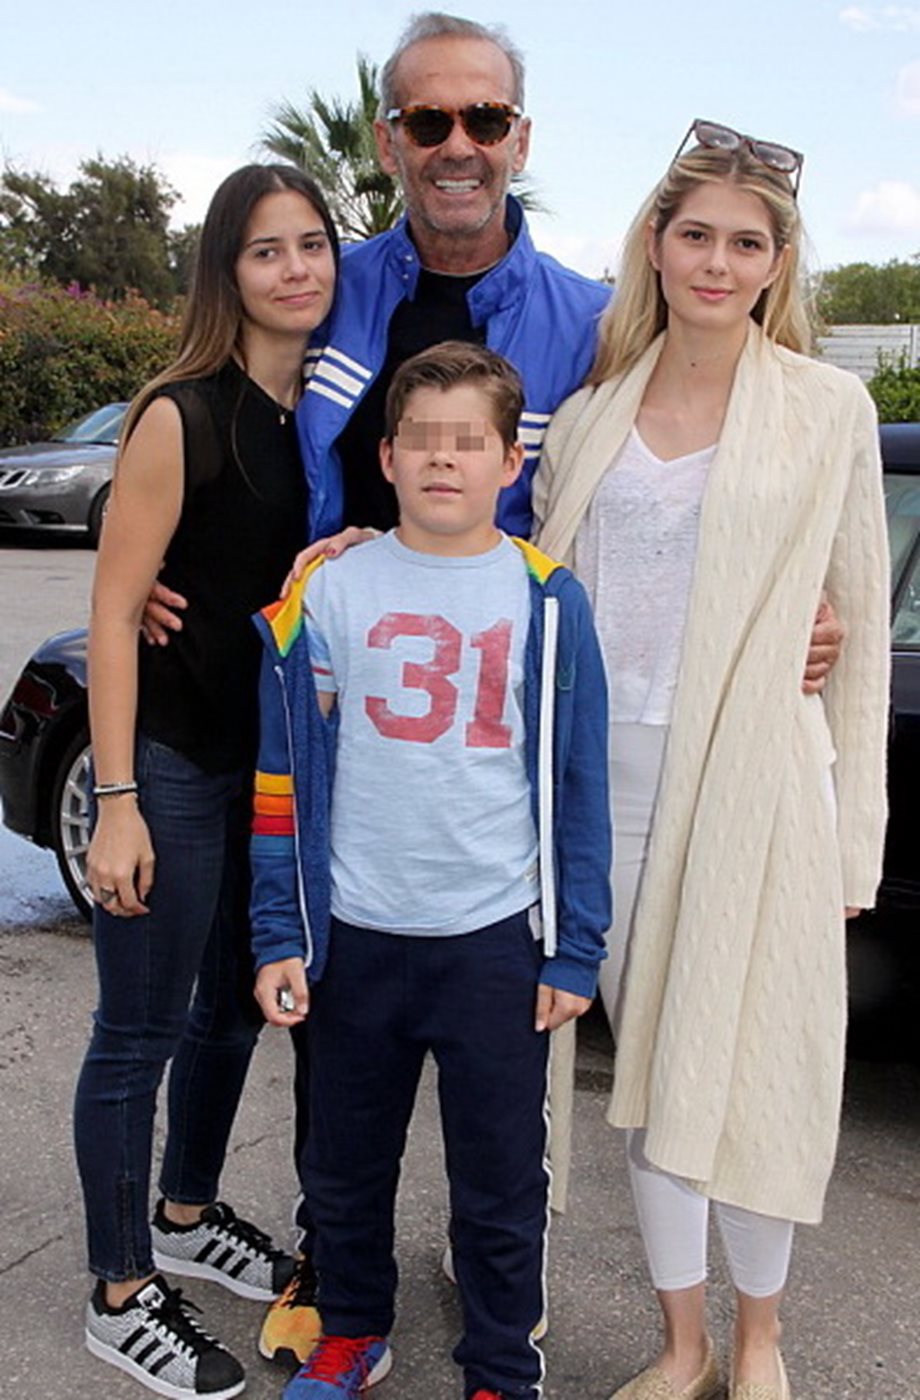 Δύσκολη ημέρα για την οικογένεια Κωστόπουλου: Η απώλεια και το μήνυμα στο instagram